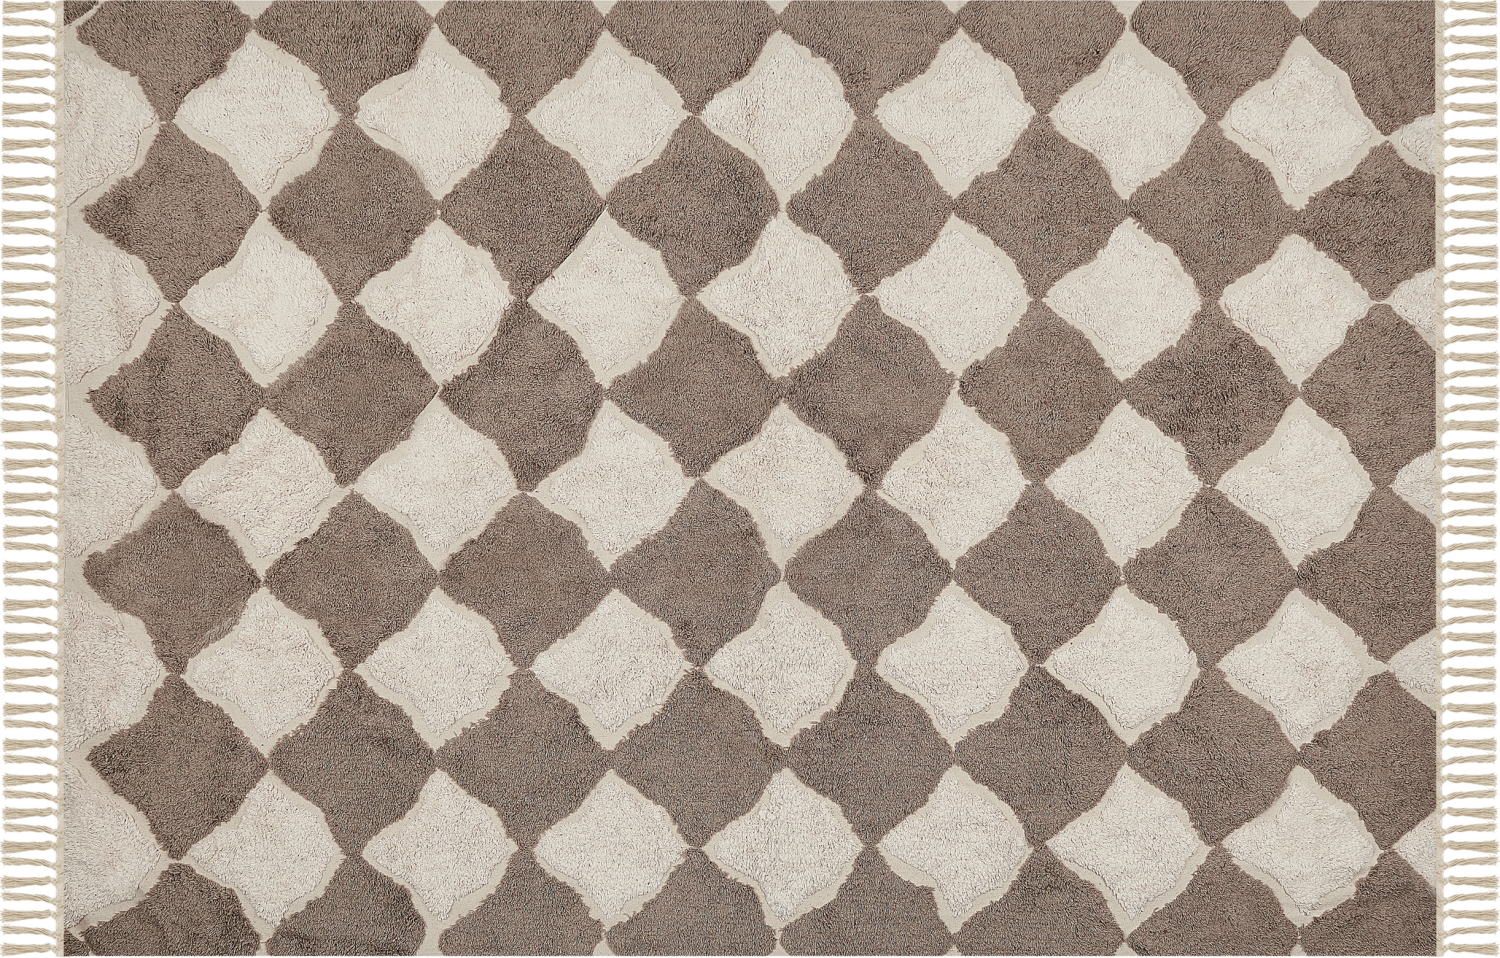 Teppich Baumwolle braun beige 140 x 200 cm SINOP Bild 1